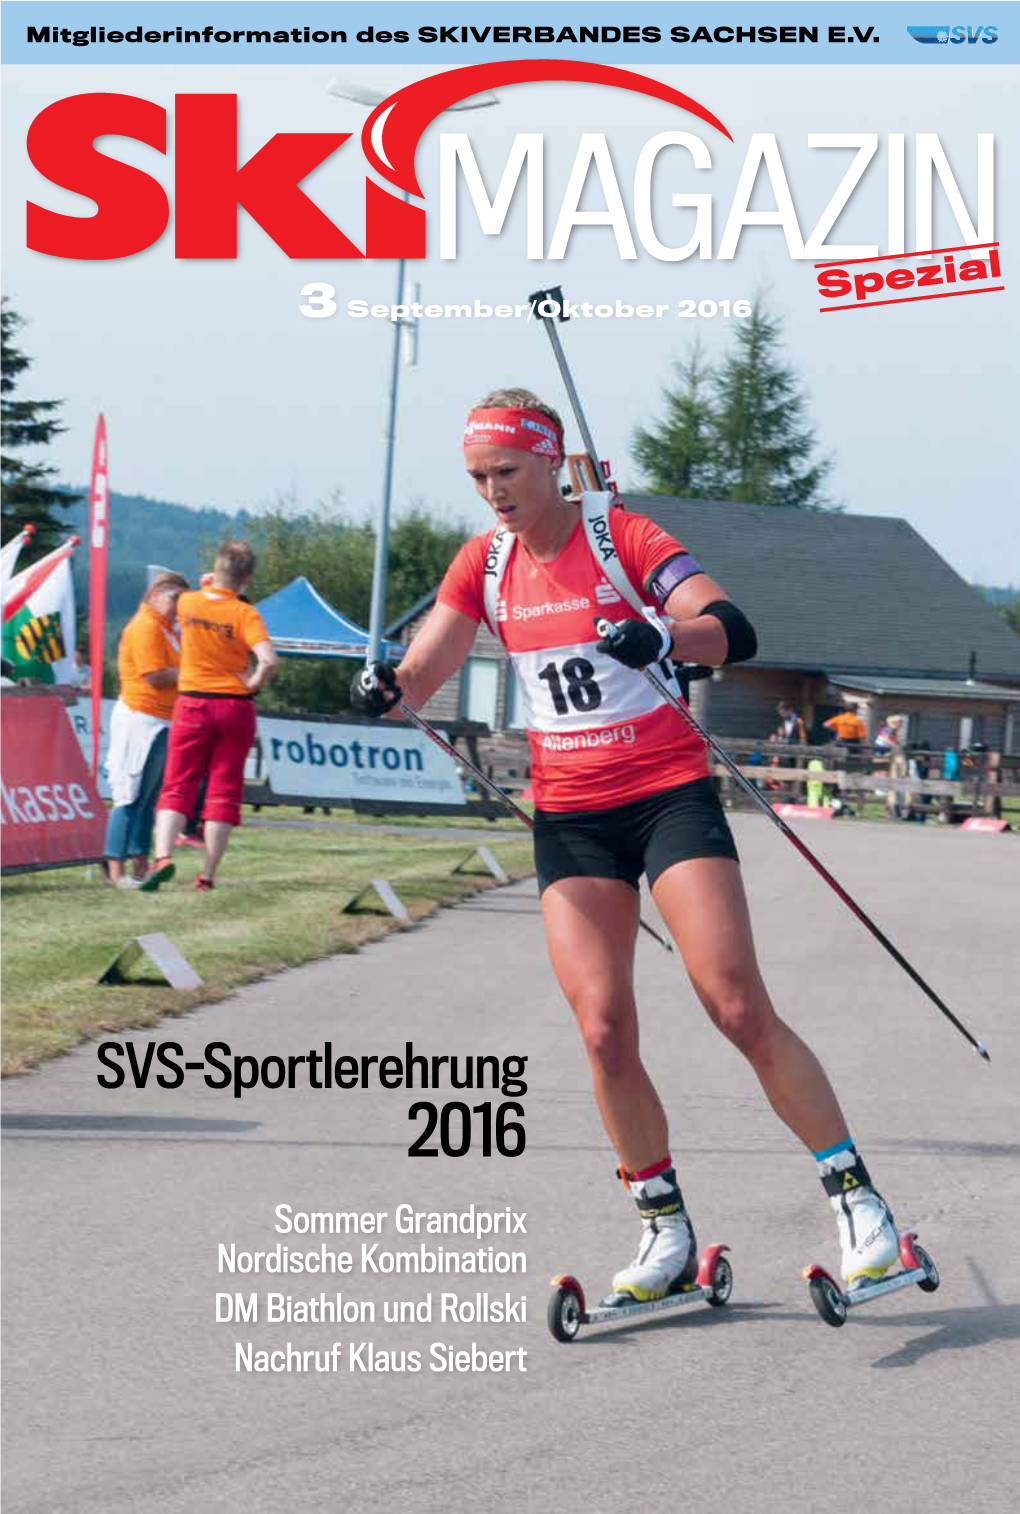 SVS-Sportlerehrung 2016 Sommer Grandprix Nordische Kombination DM Biathlon Und Rollski Nachruf Klaus Siebert Unsere Stammgäste